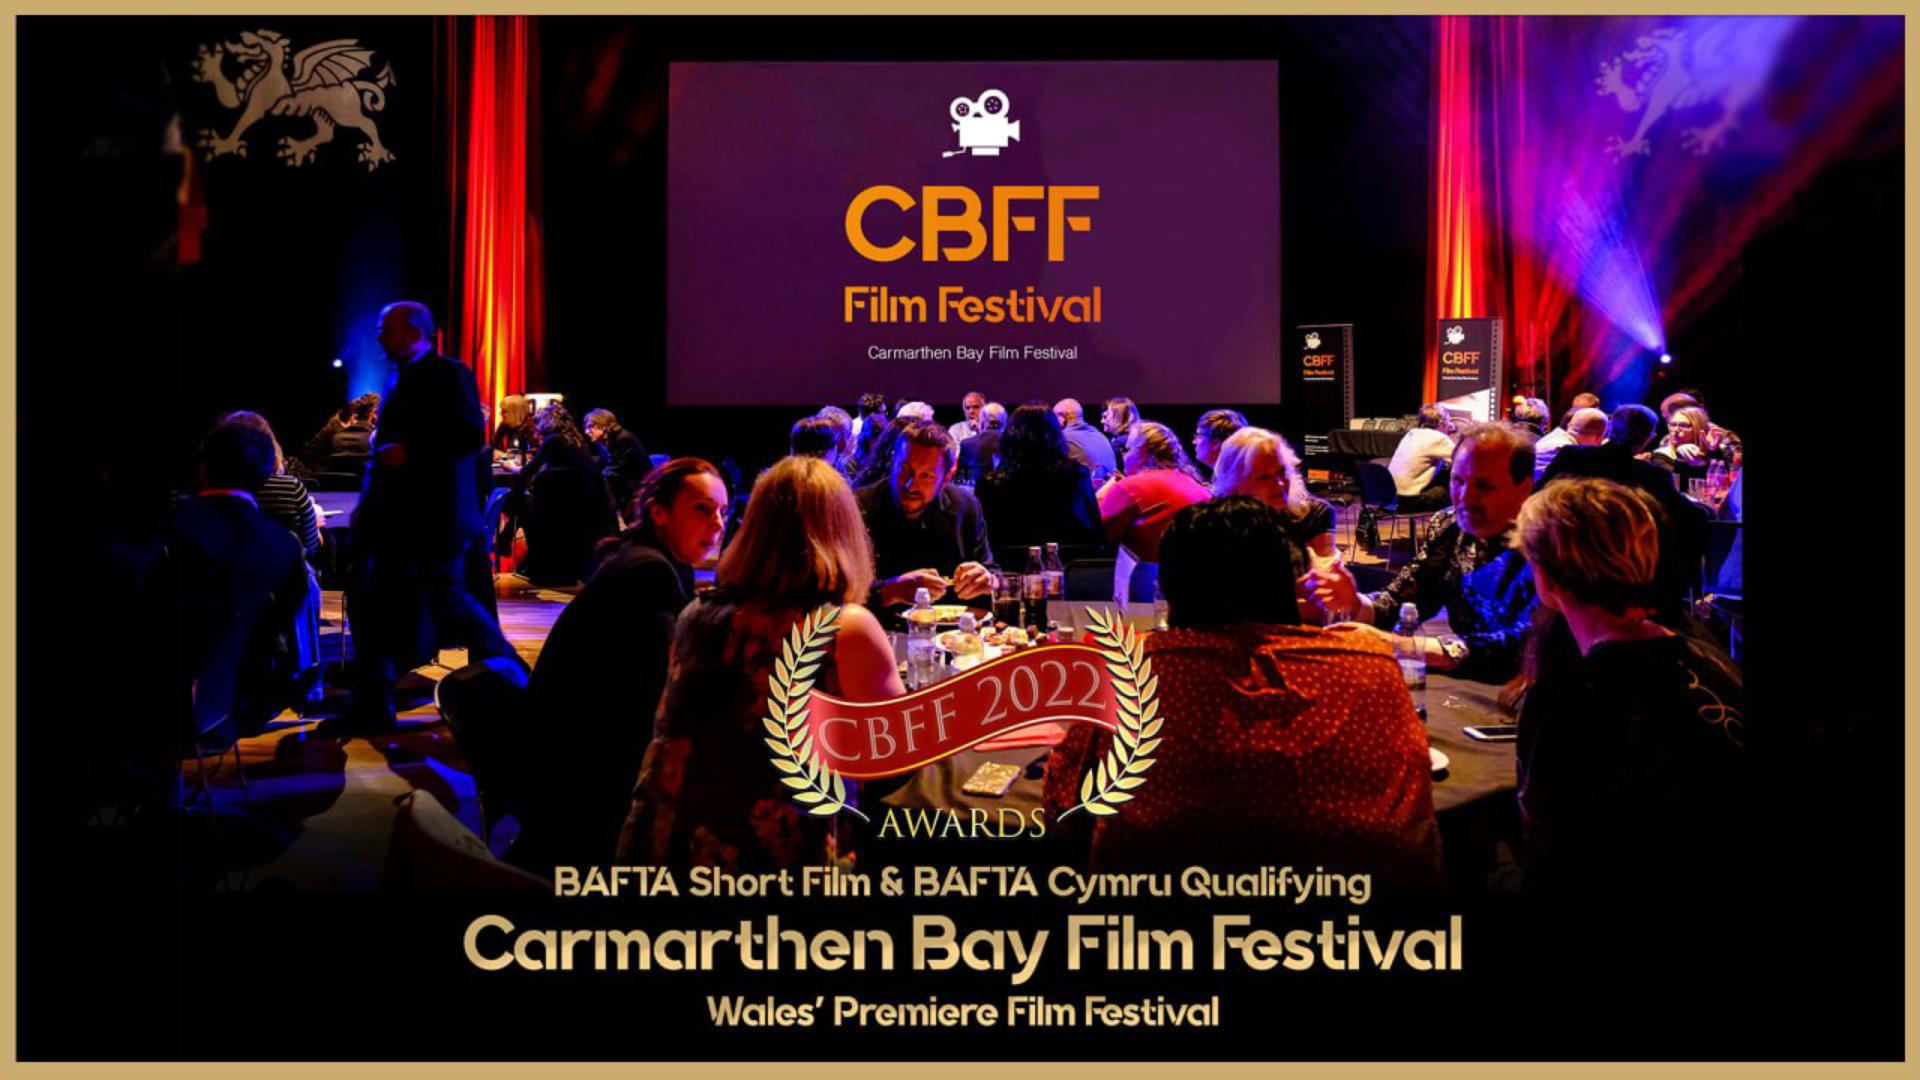 CBFF 2022 Awards Gala at Ffwrnes Theatre